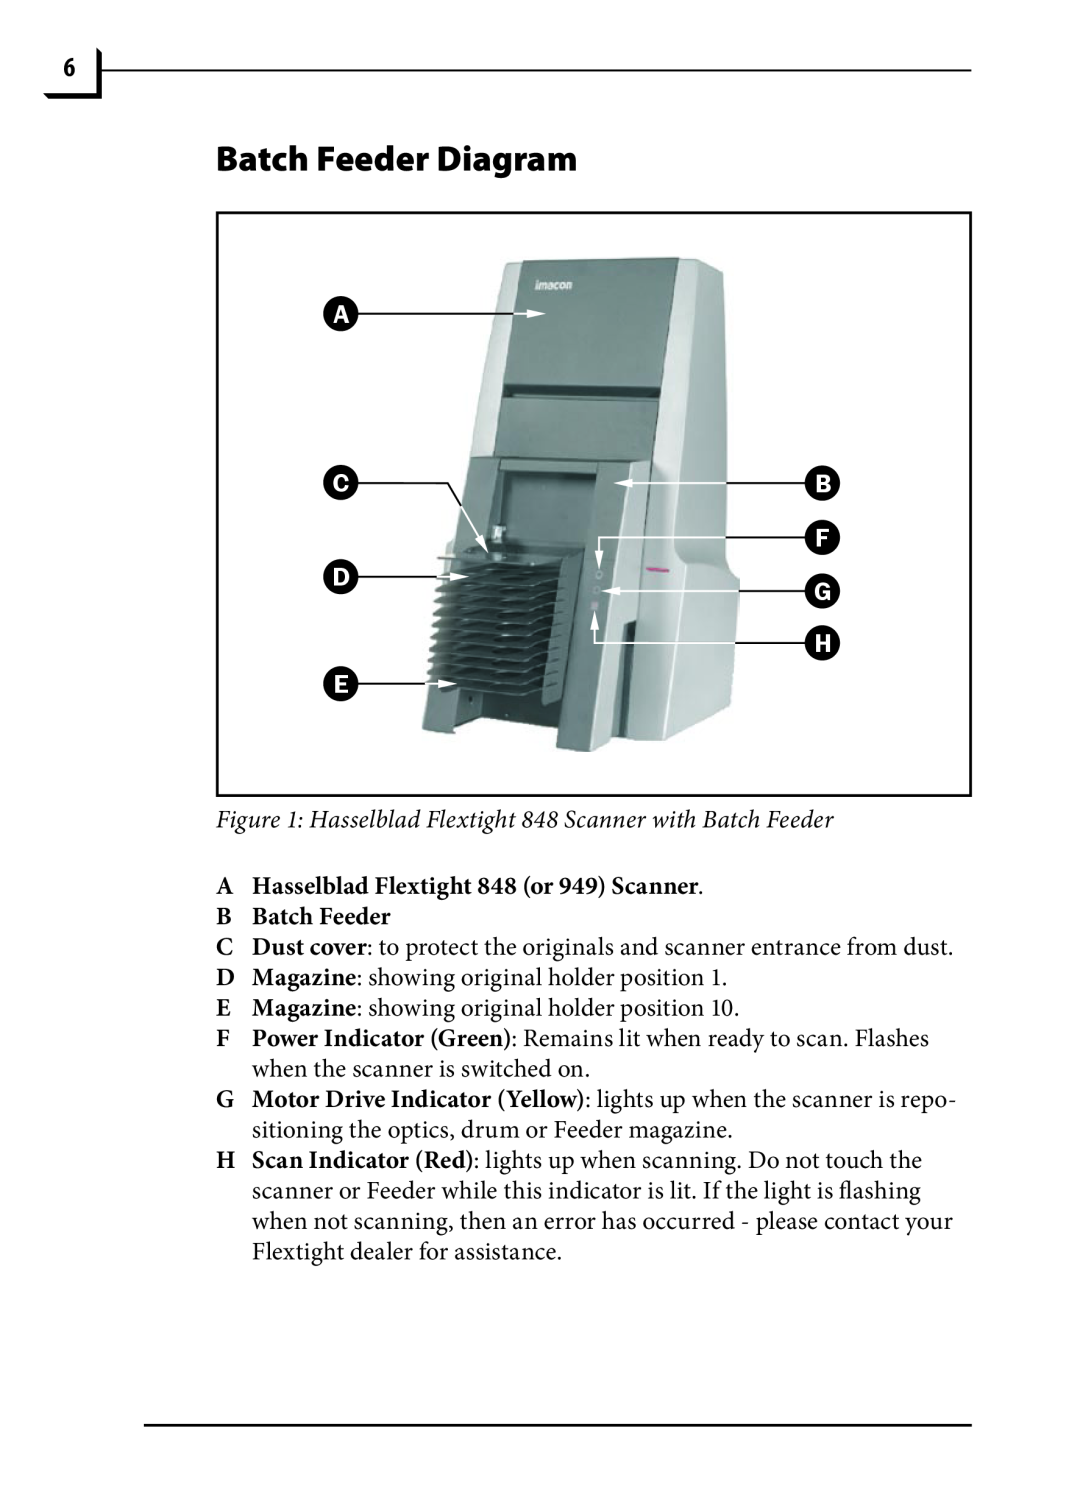 Hasselblad 848 manual Batch Feeder Diagram, A C D E, B F G H 